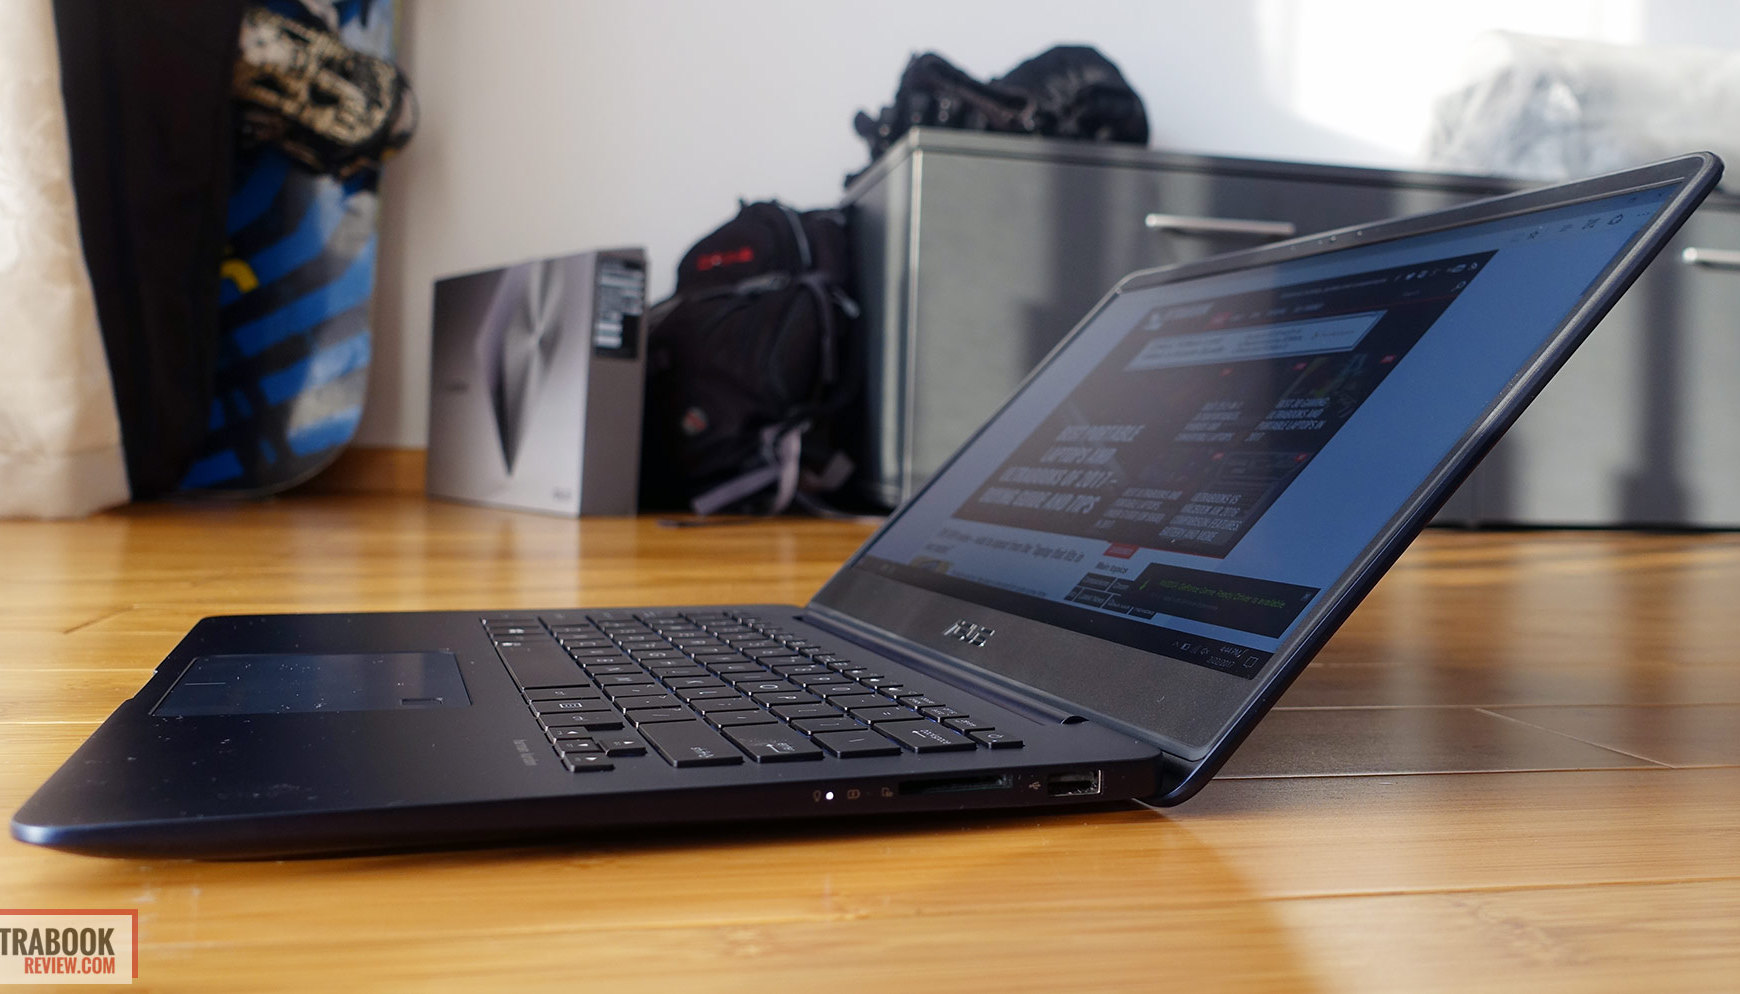  Laptop Asus UX430UQ .jpg